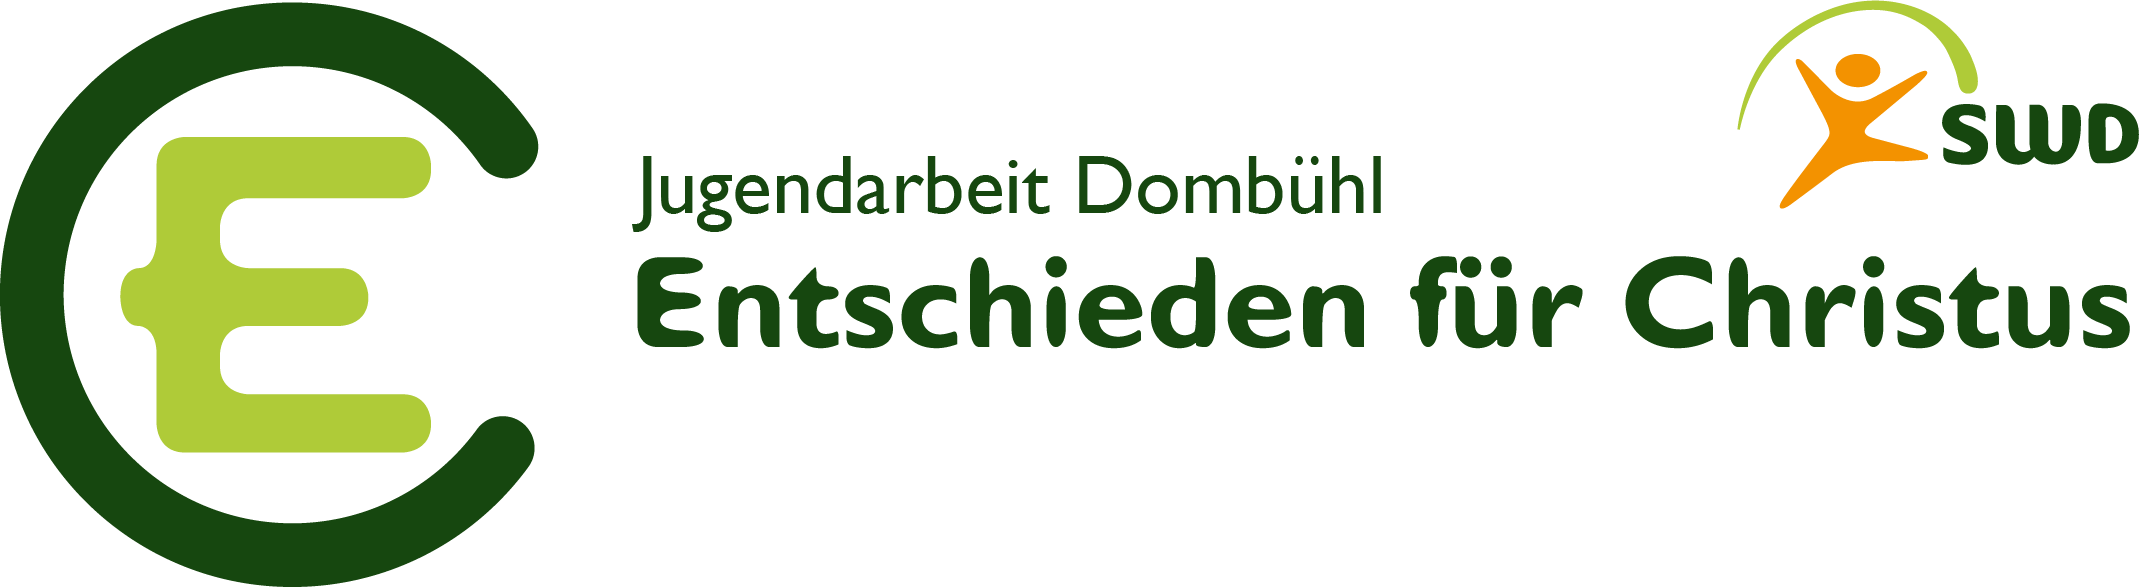 EC Dombühl